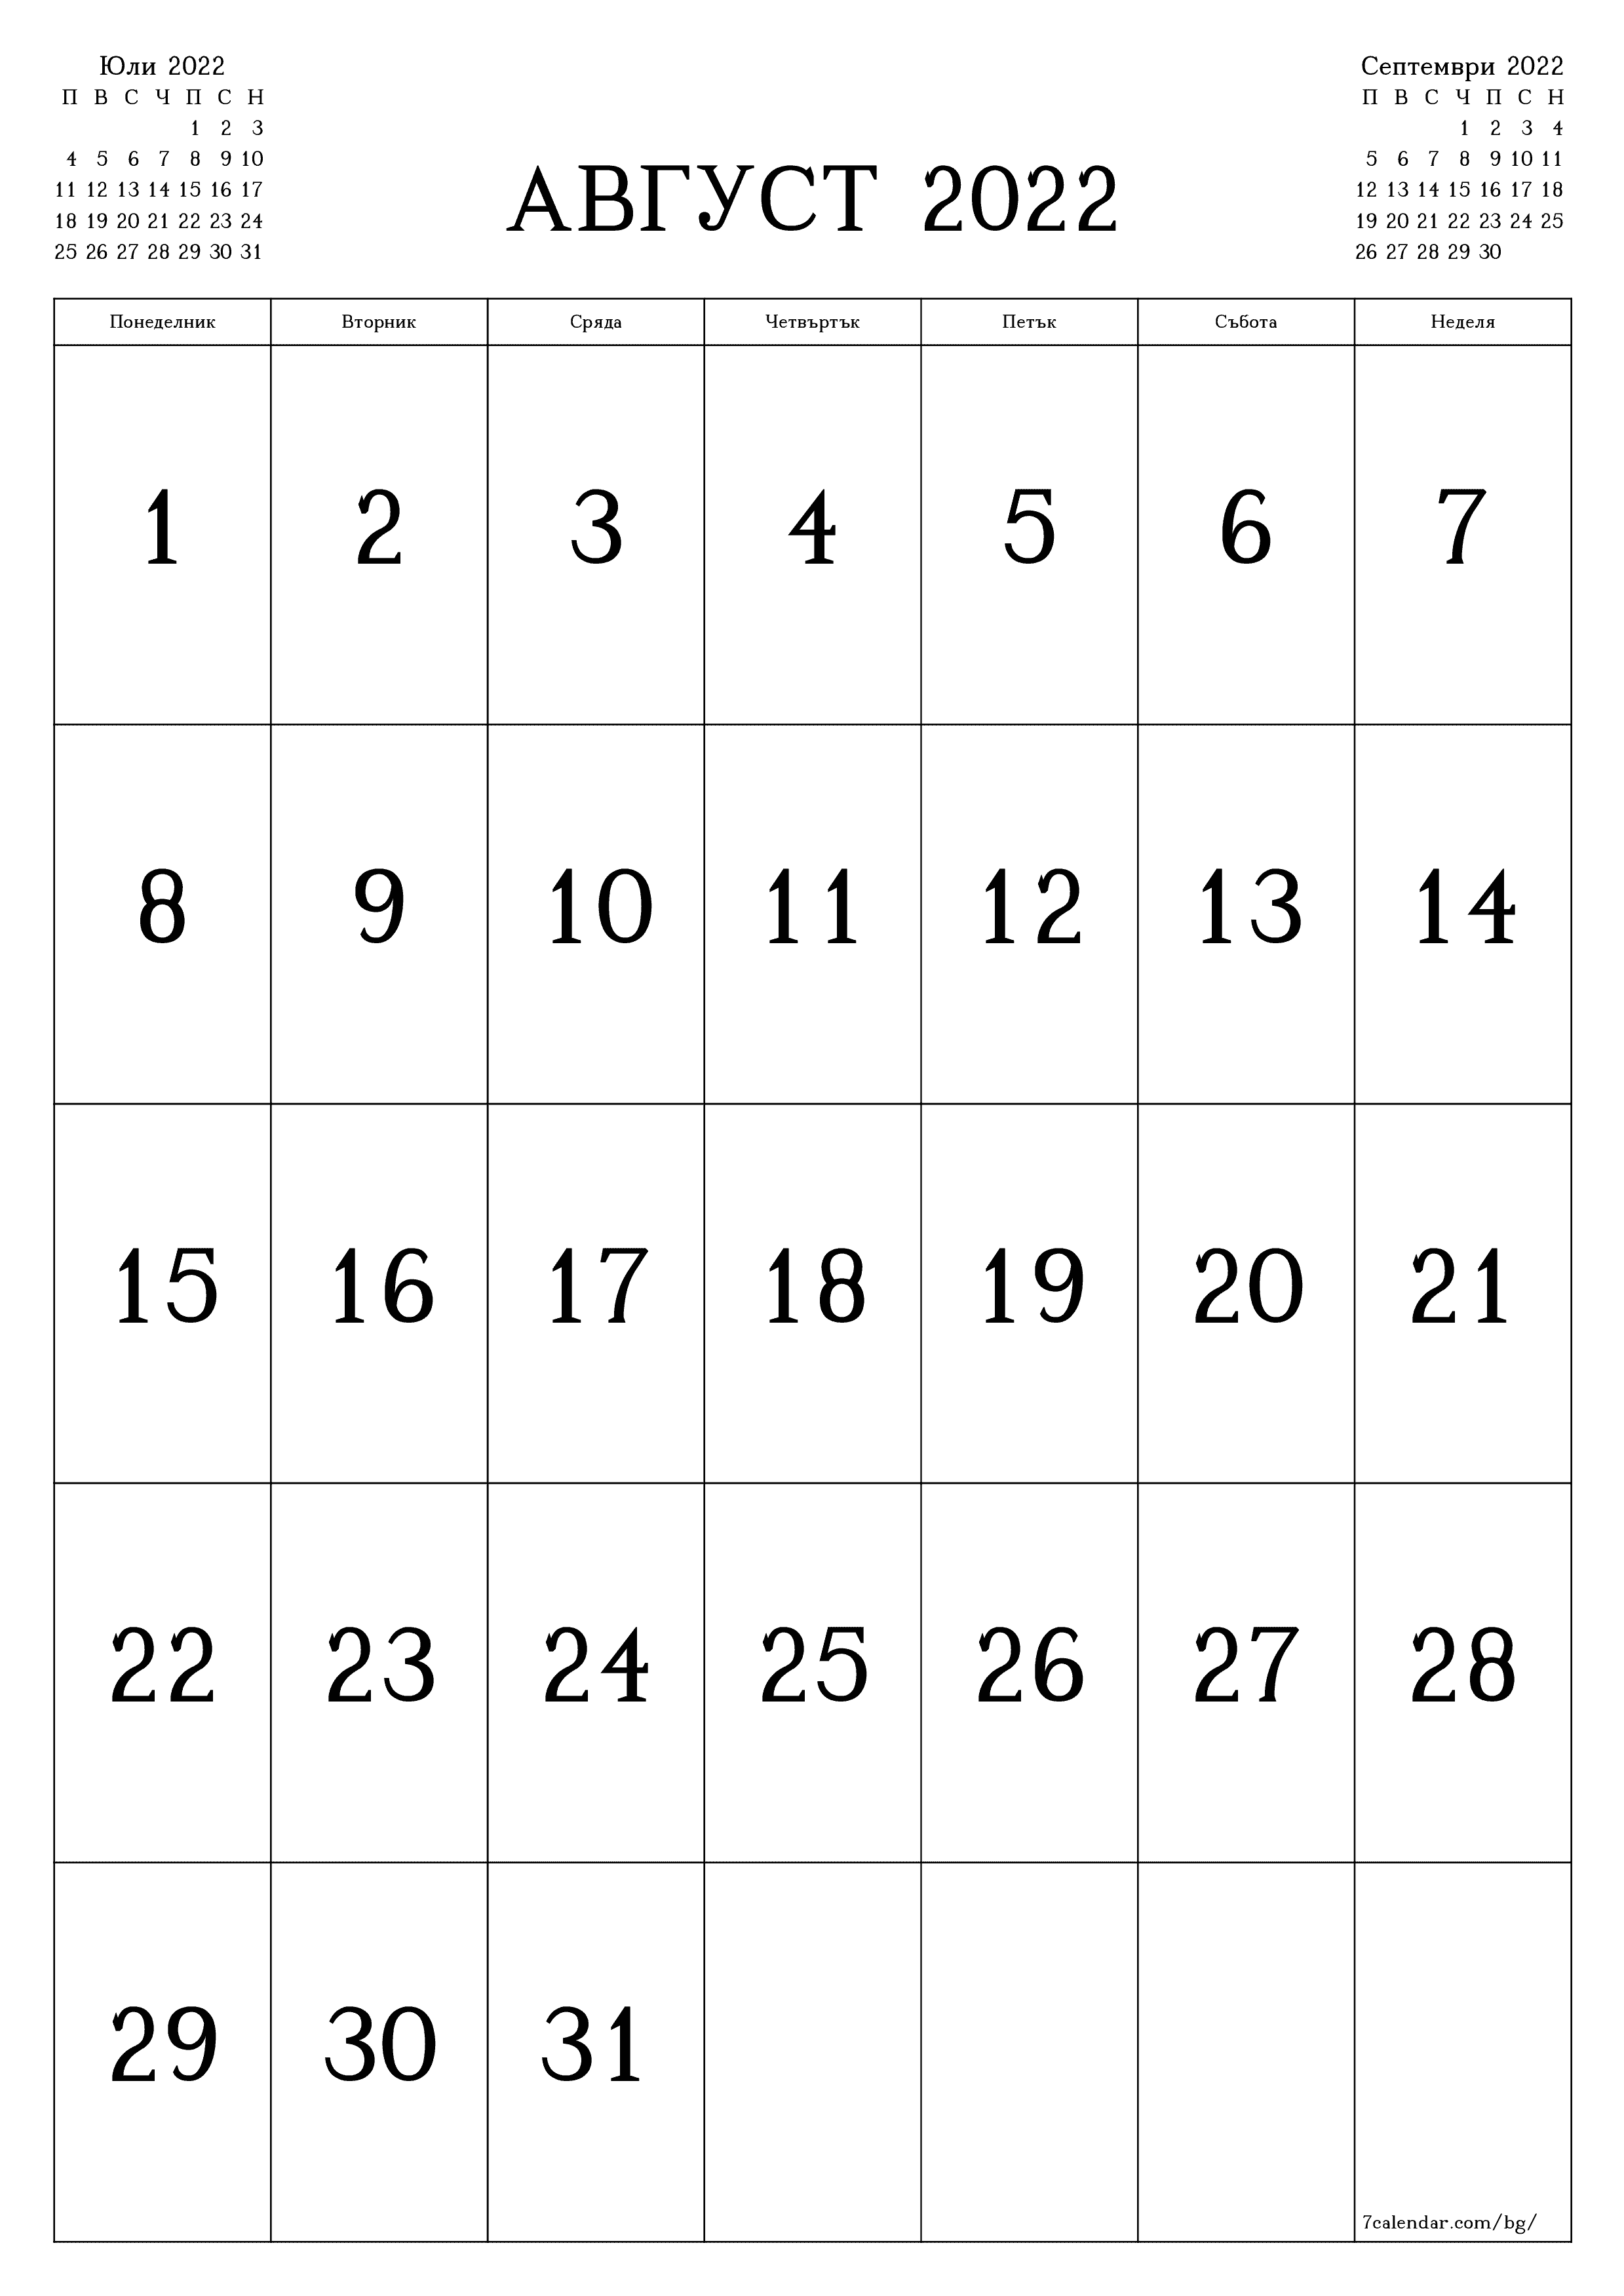 Празен месечен календар за месец Август 2022 запишете и отпечатайте в PDF PNG Bulgarian - 7calendar.com